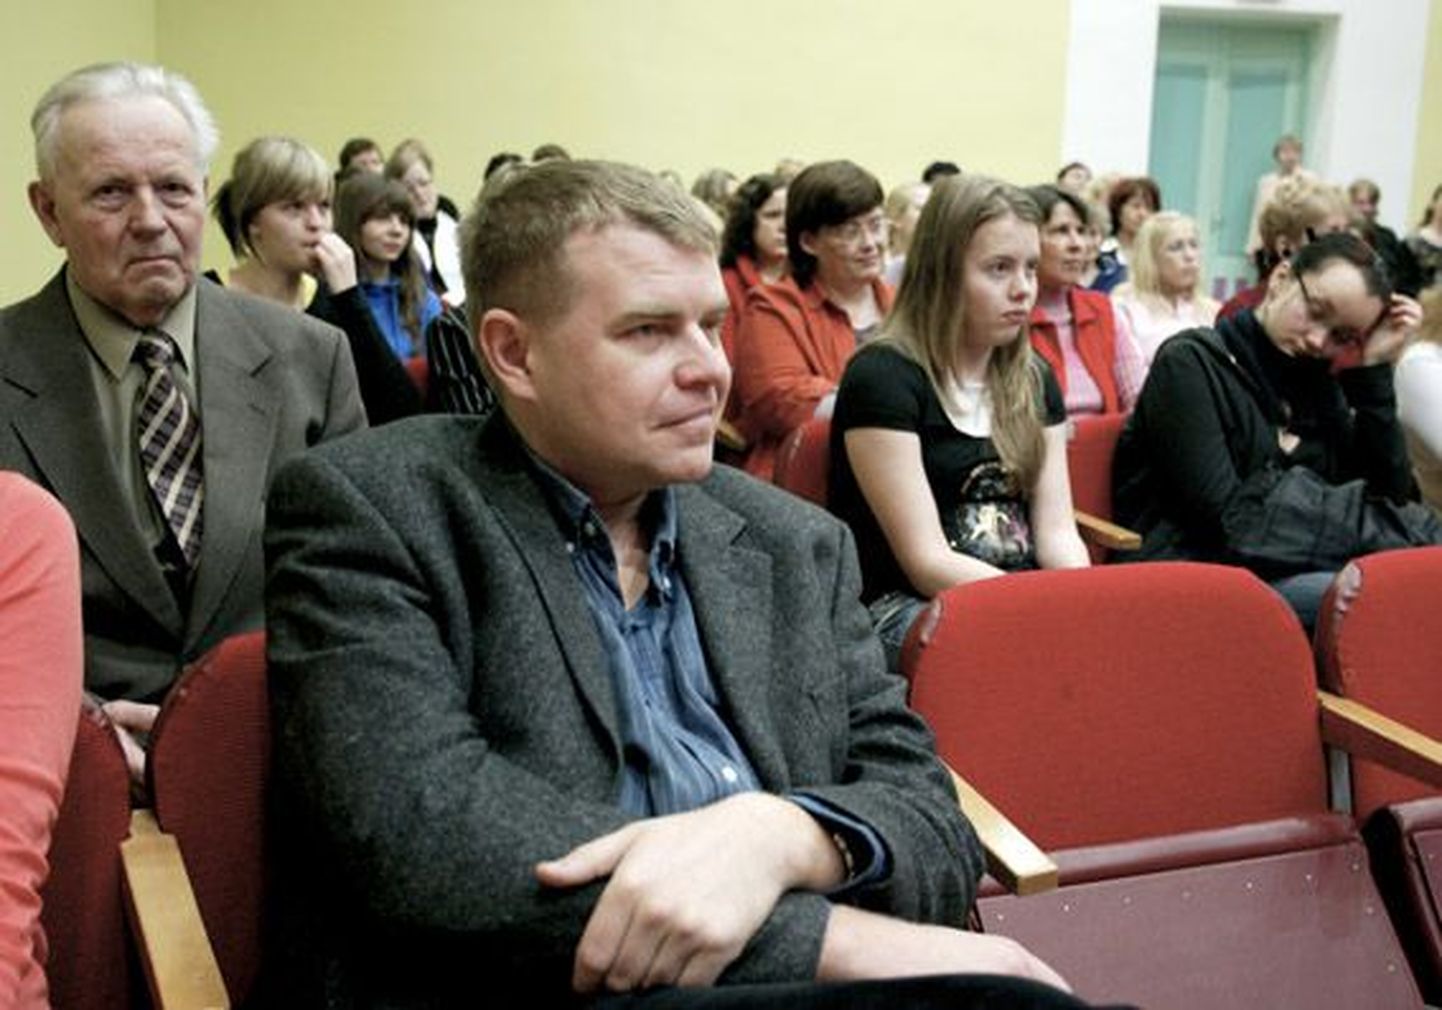 Vilde kirjandusauhinna laureaati Andrus Kivirähka ootasid Pajusti klubis tervitussõnad, auhinnamedal, vihmavari, väike kontsert, lavastatud romaanikatkend ning palju lugejate küsimusi.